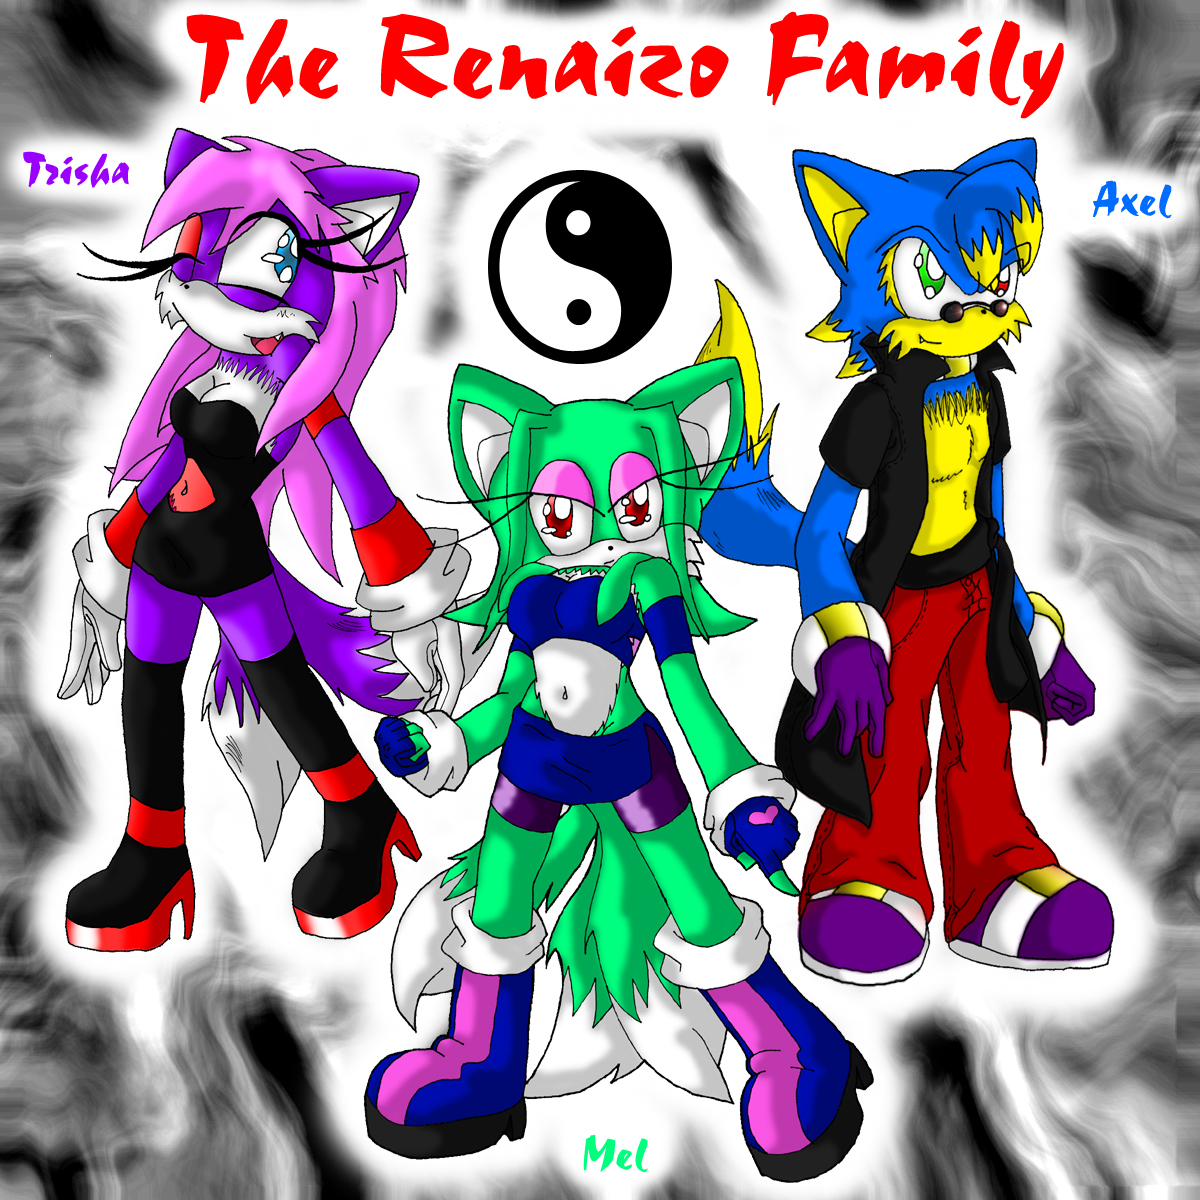 The Renaizo Family by MelTheFox